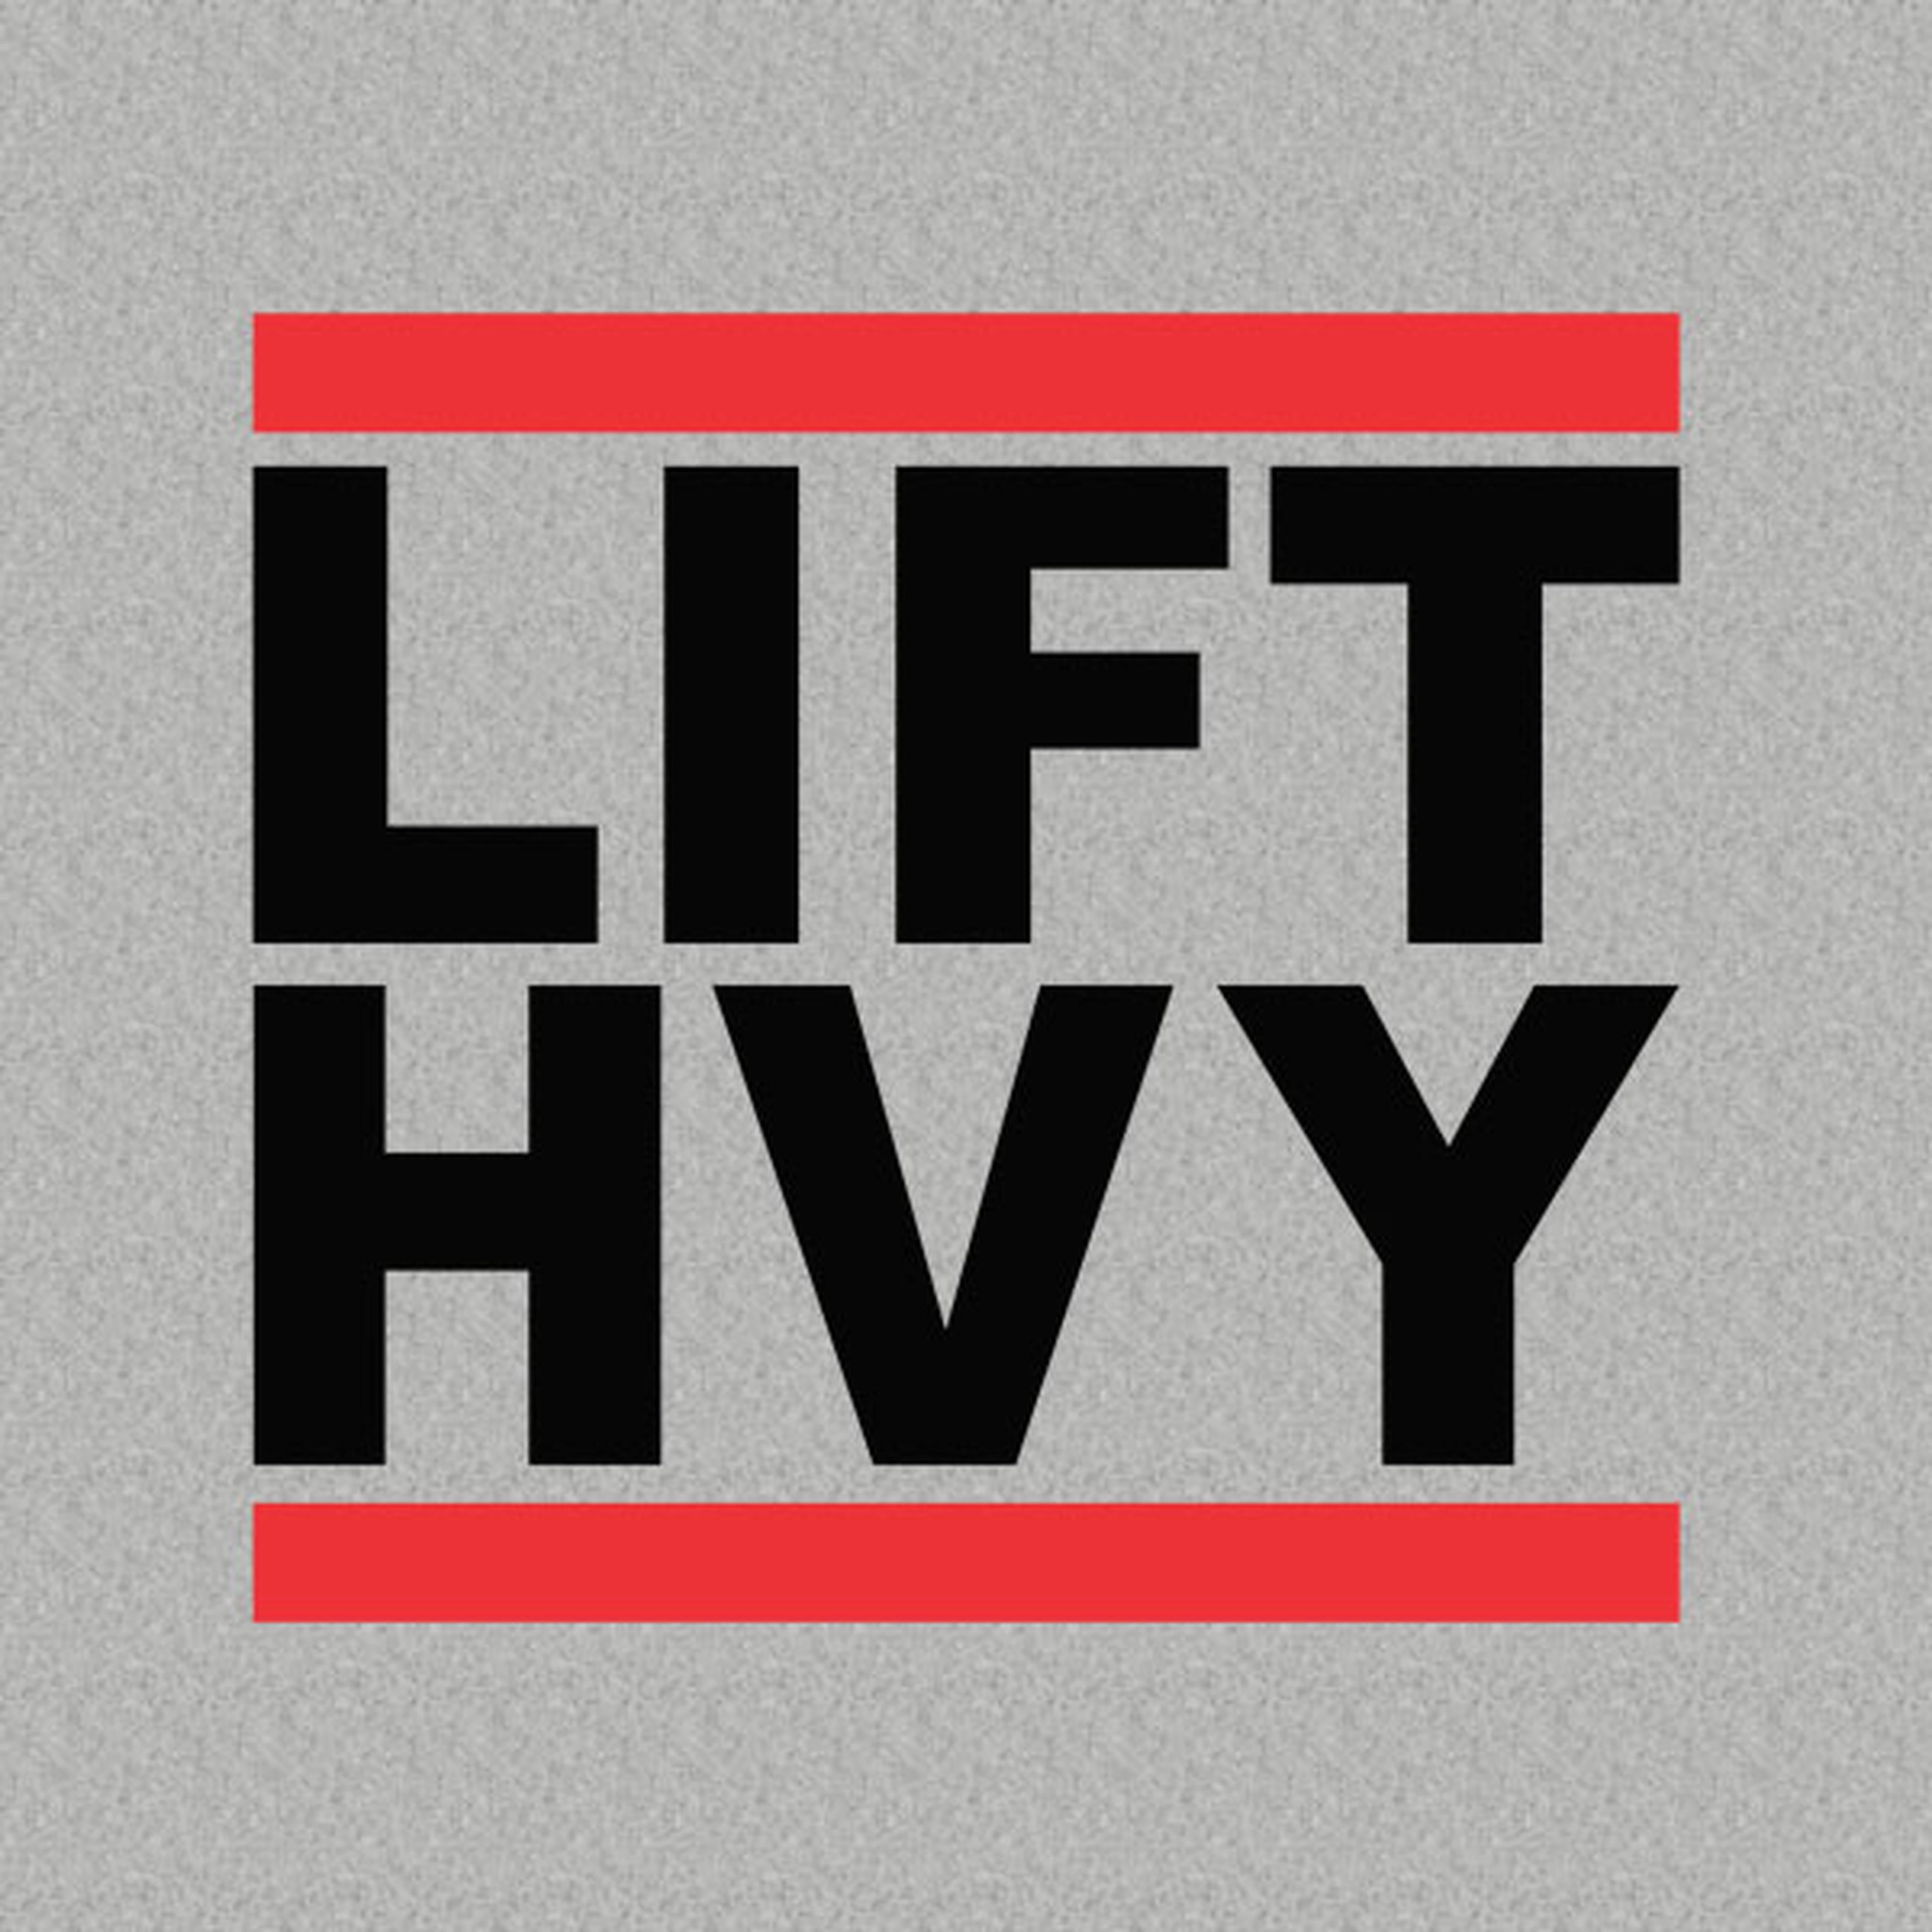 LFT HVY - LIFT HEAVY